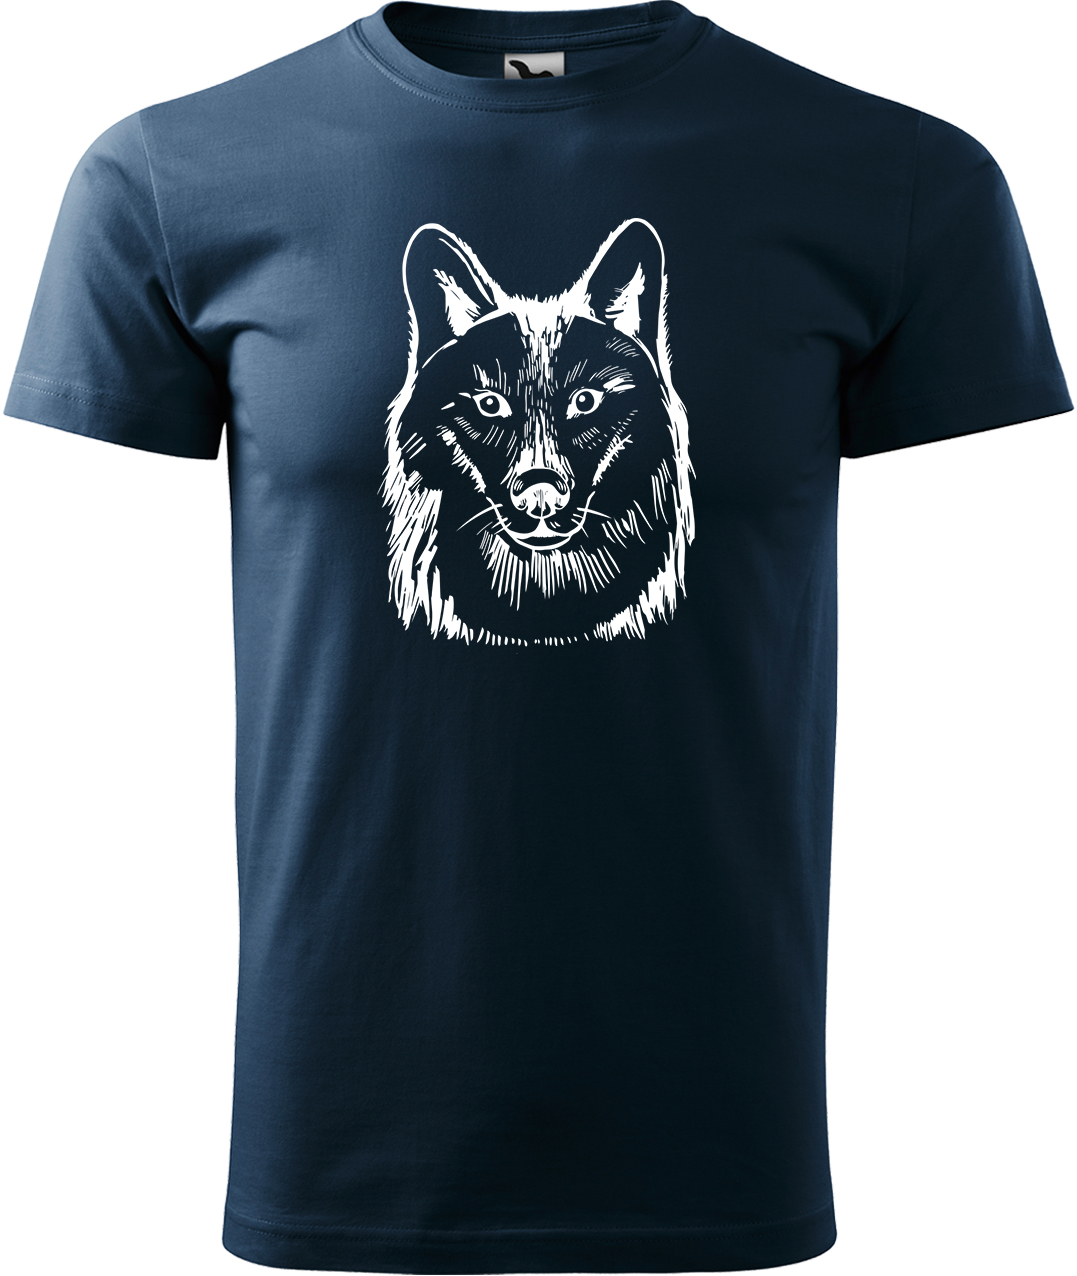 Pánské tričko s vlkem - Kresba vlka Velikost: M, Barva: Námořní modrá (02), Střih: pánský